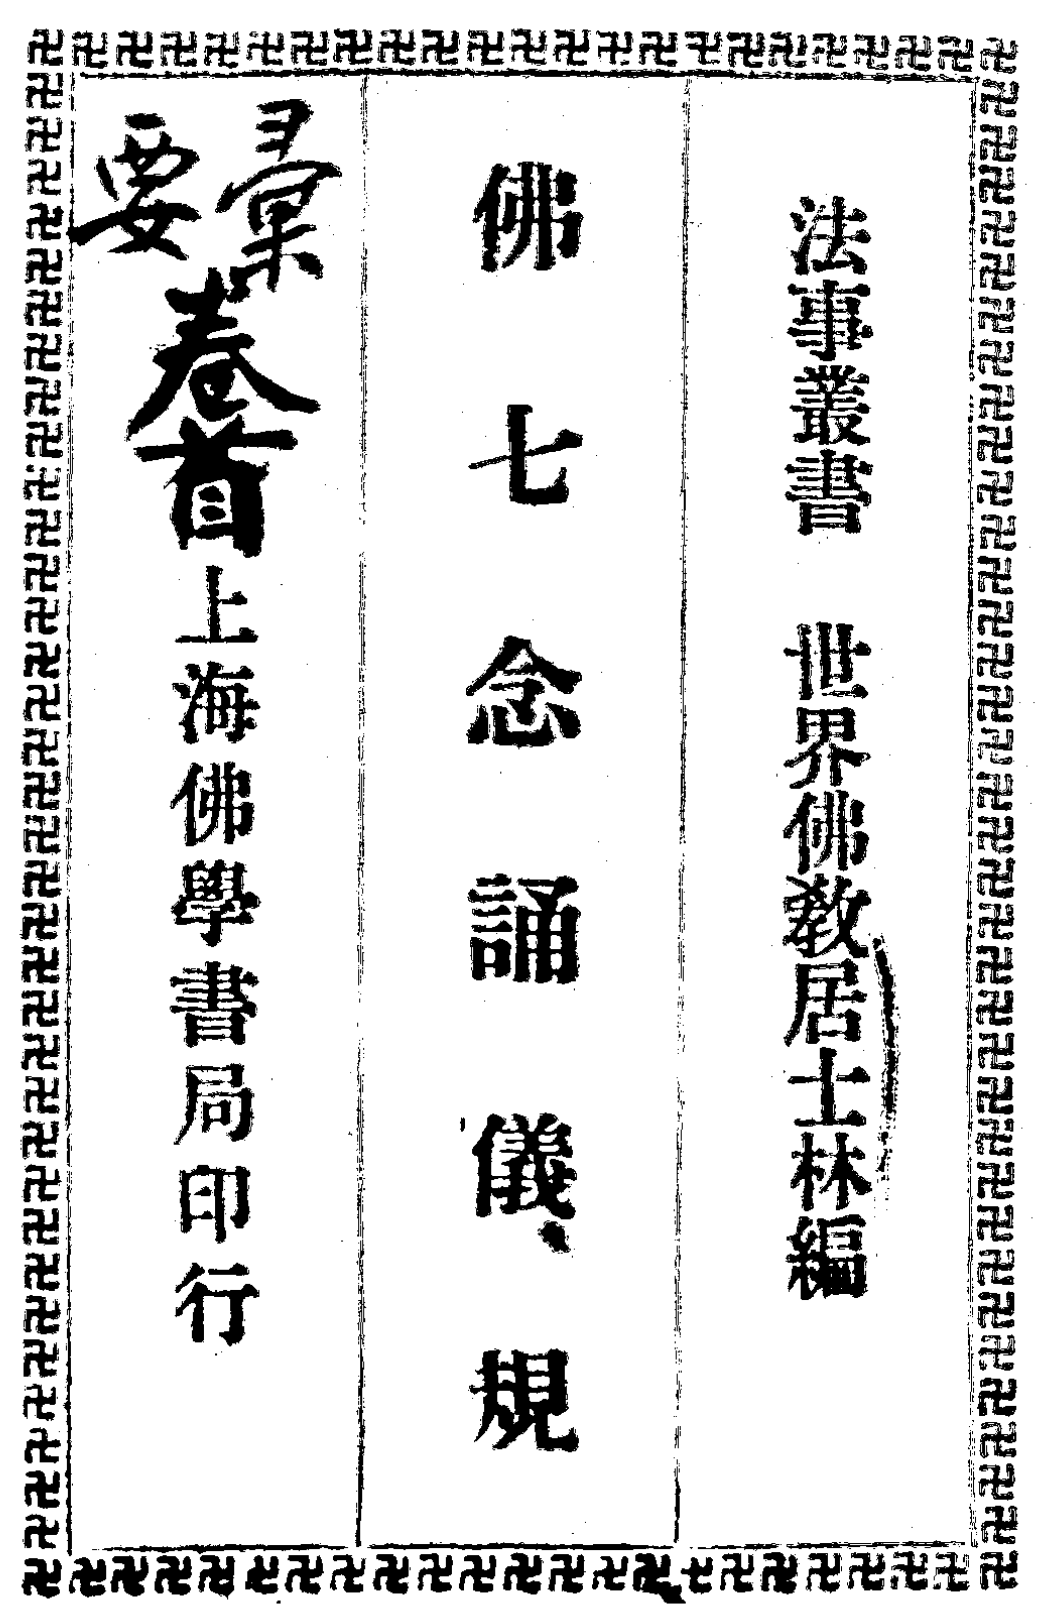 File:Fo qinian song yigui 1934.png